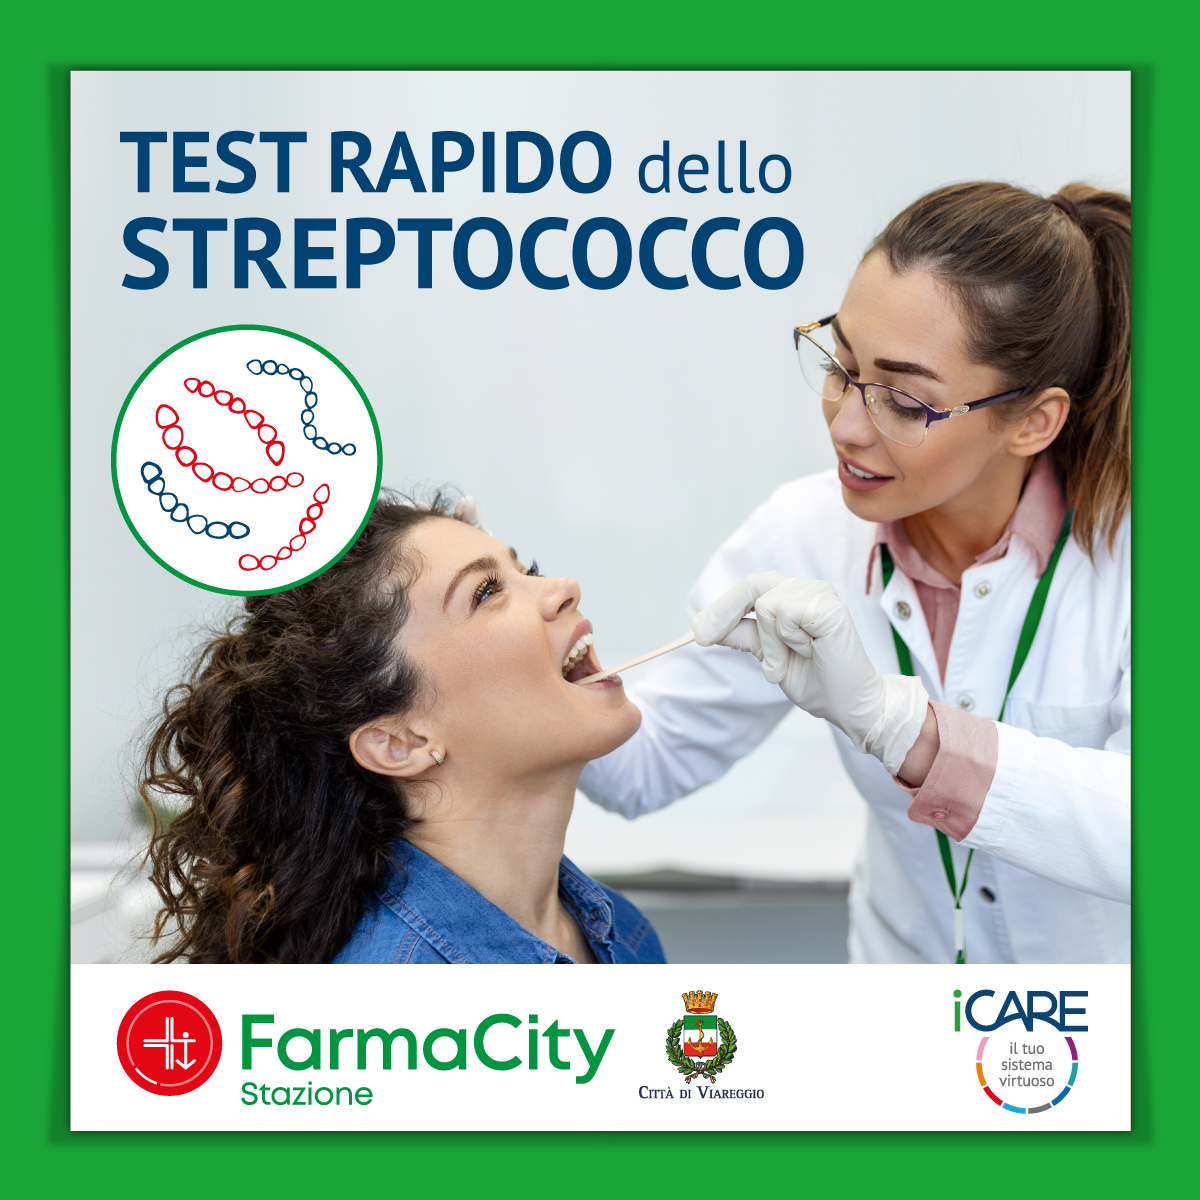 Test rapido dello Streptococco in FarmaCity